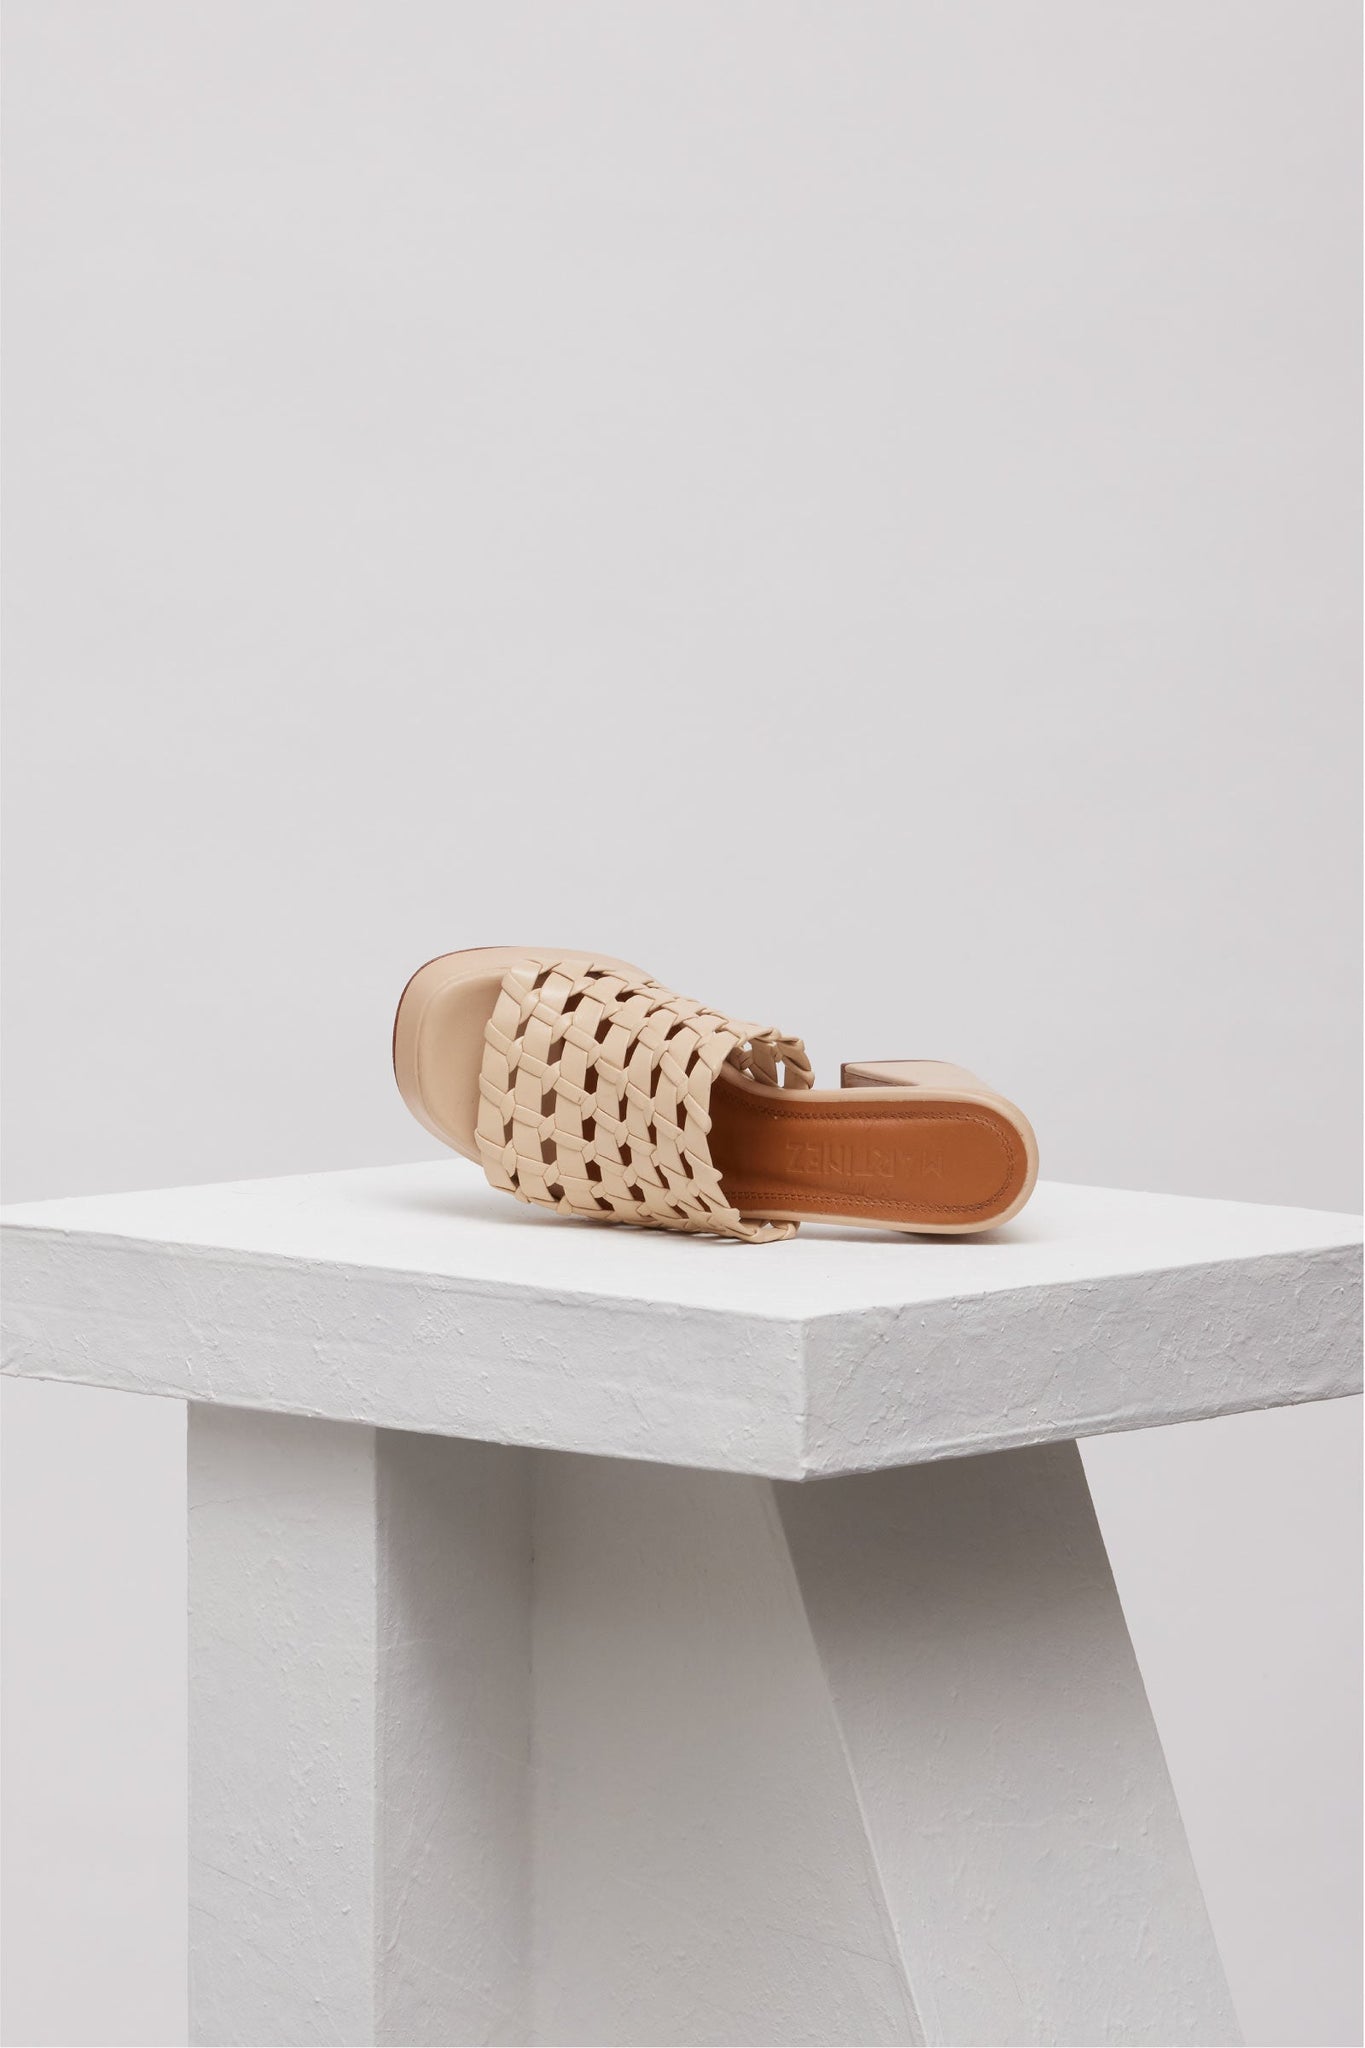 Souliers Martinez Shoes ALBA ESTRELLA - Beige Woven Leather Platform Mules 